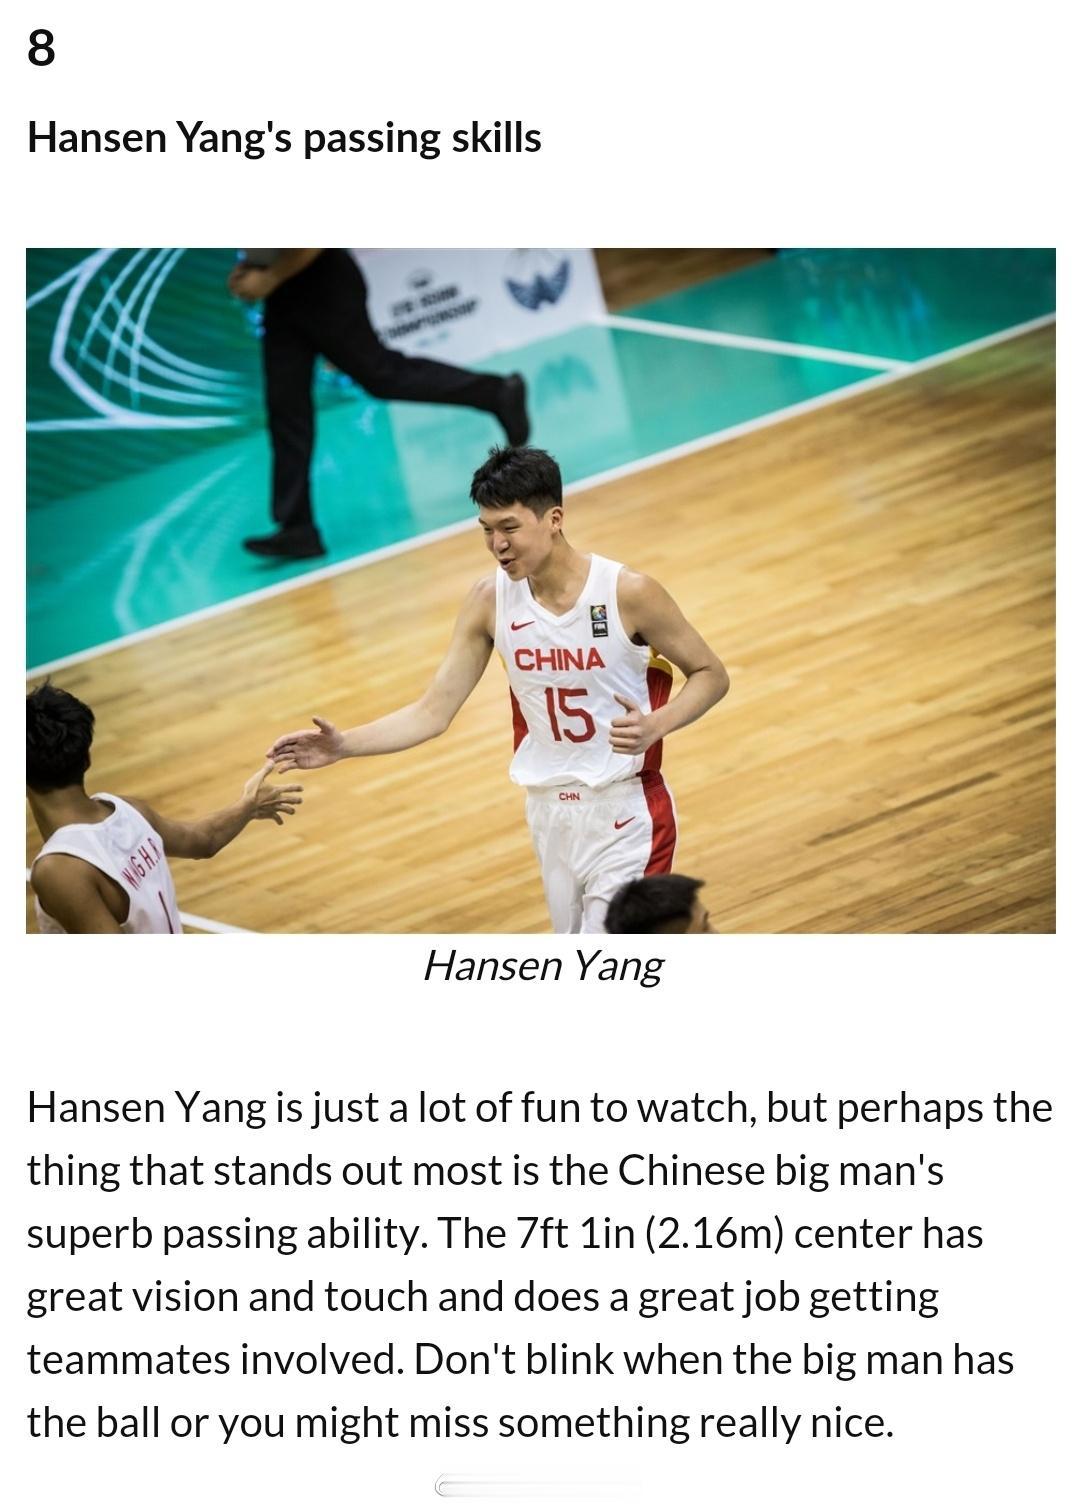 国际篮联官网撰文U19世界杯的十大看点，“中国球员杨瀚森的传球”排在第8位，附上(2)